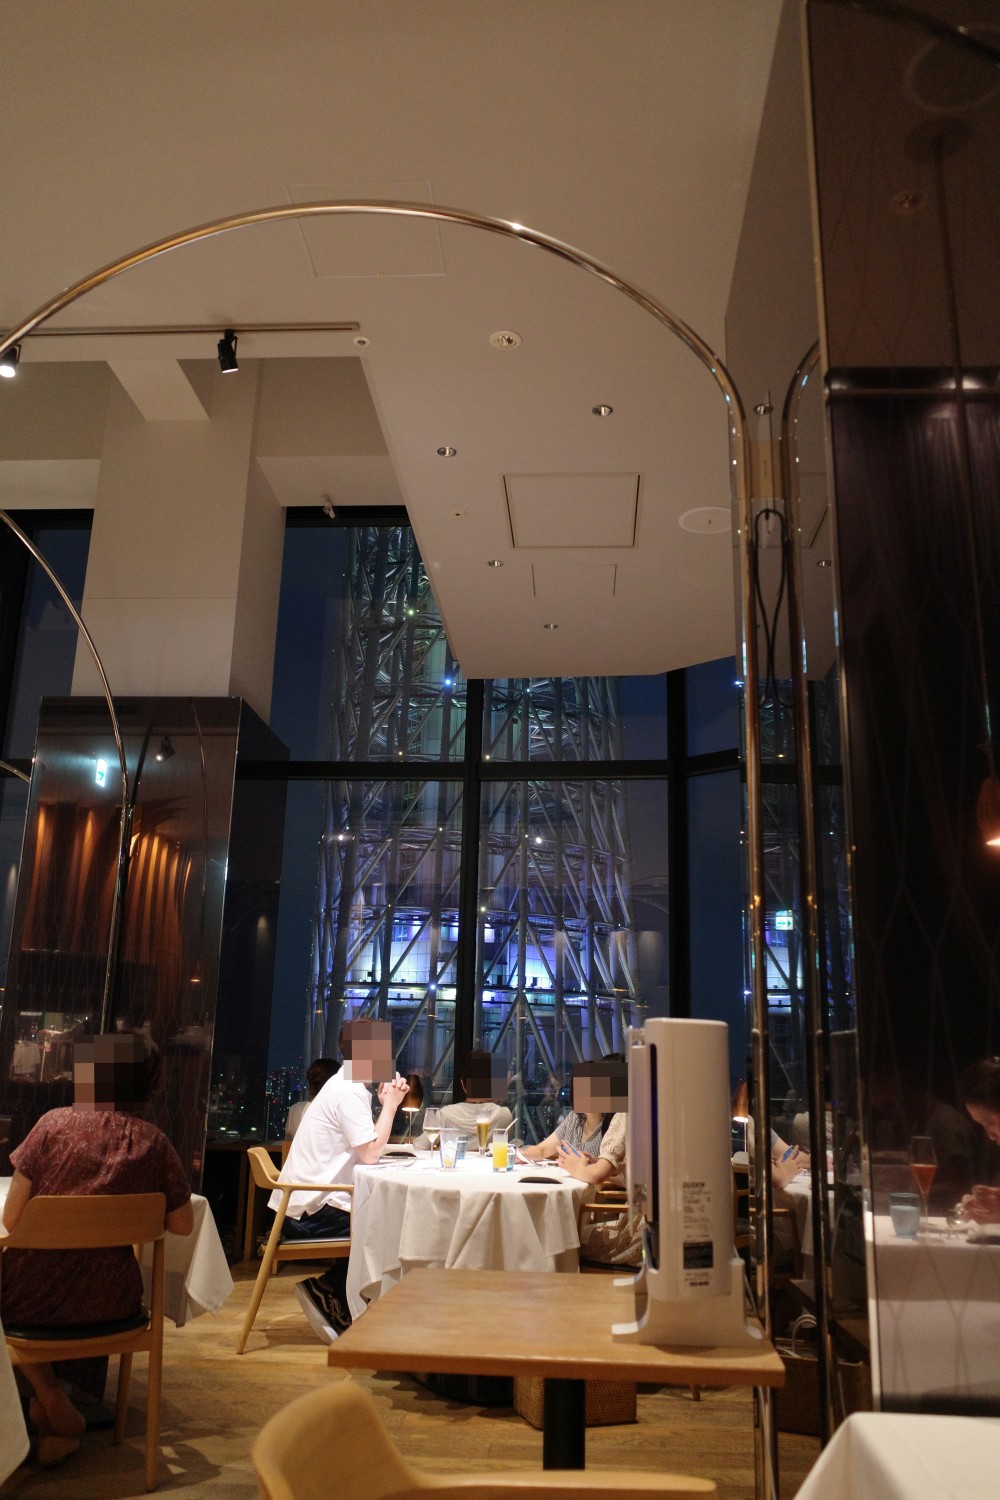 ラ・ソラシド・フードリレーションレストラン@東京スカイツリー隣〜高層階で山形県発イタリアン